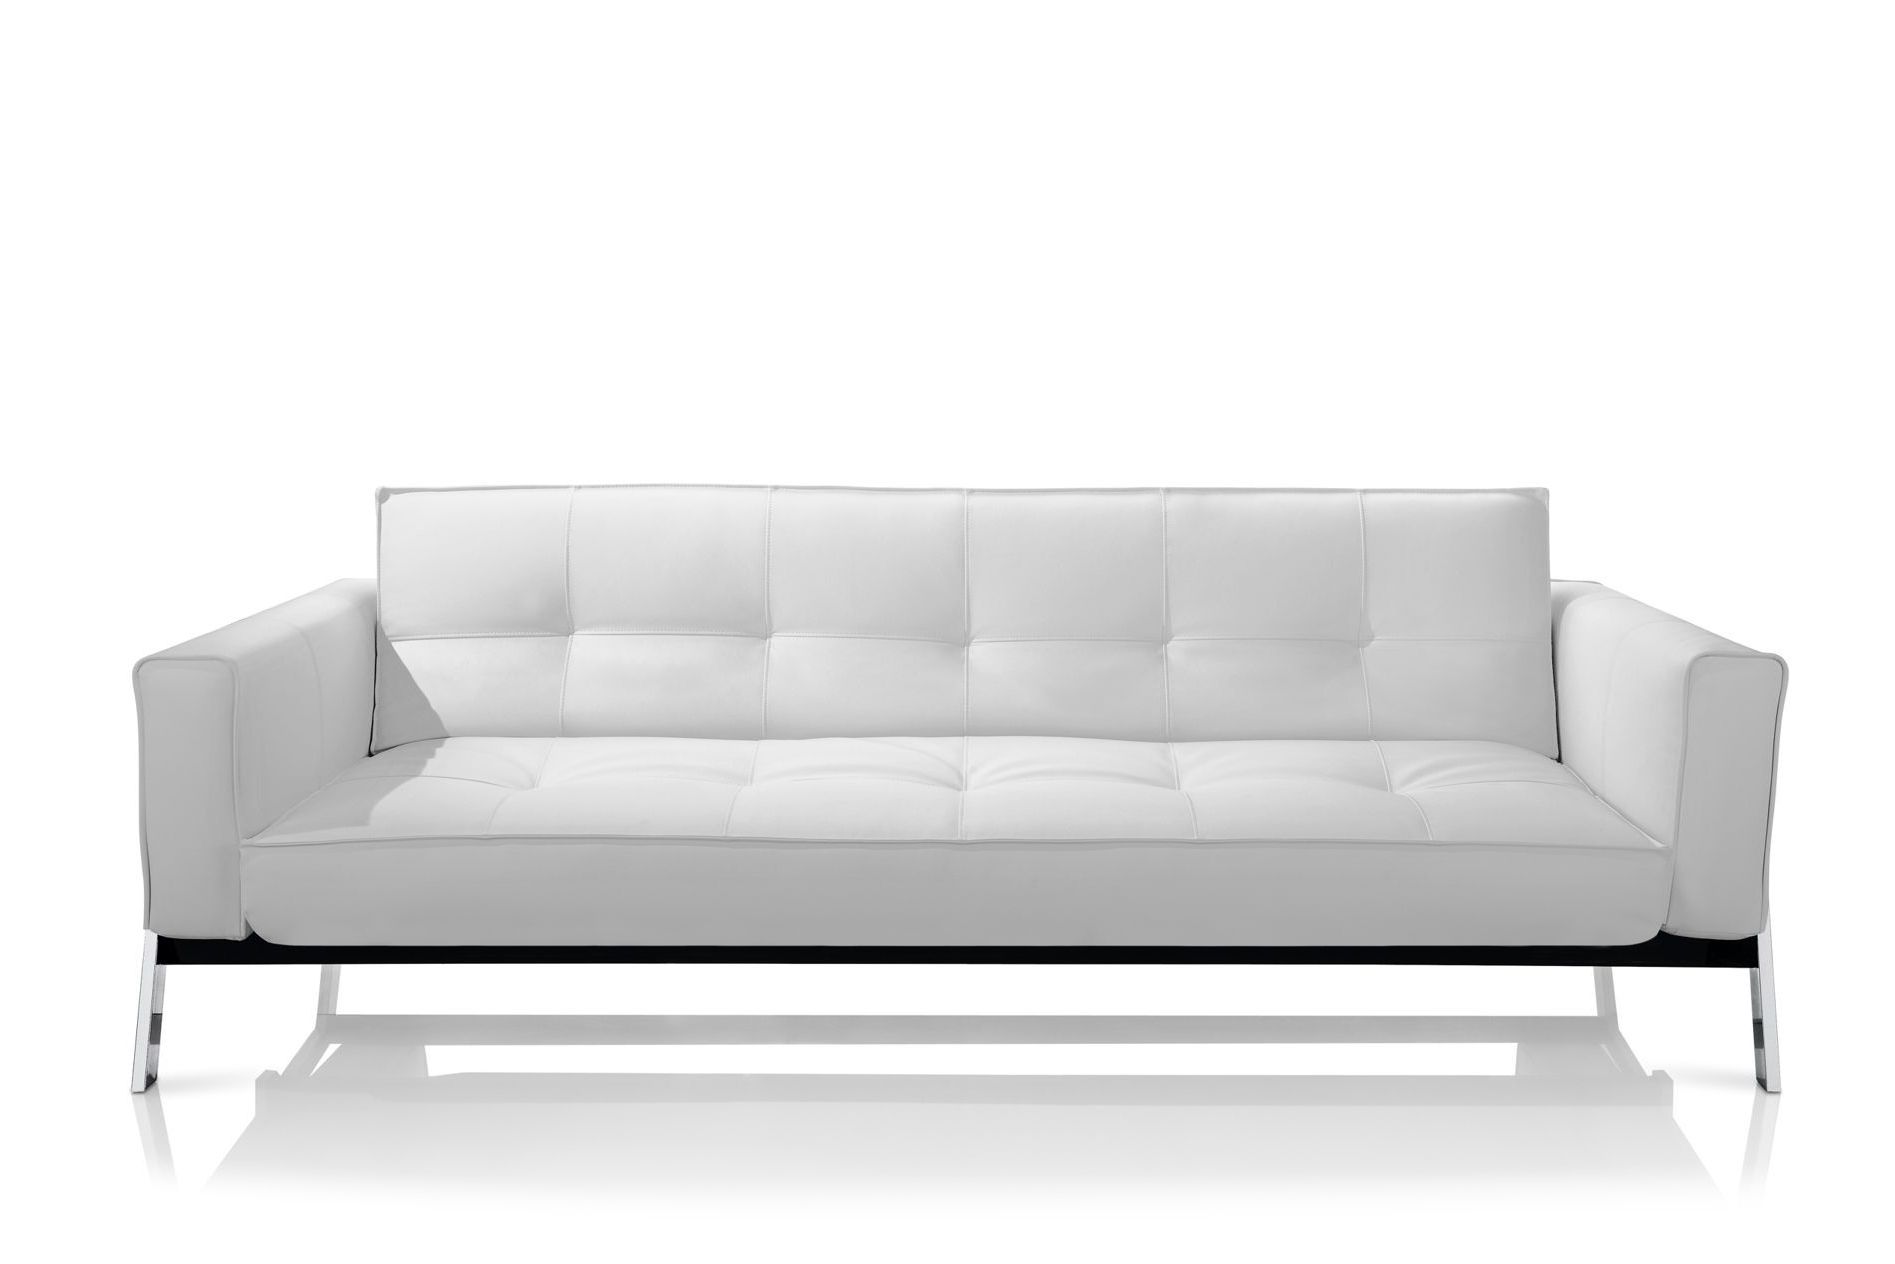 Perfect White Modern Sofa 53 In Modern Sofa Ideas With White Throughout Fashionable White Modern Sofas (View 1 of 20)